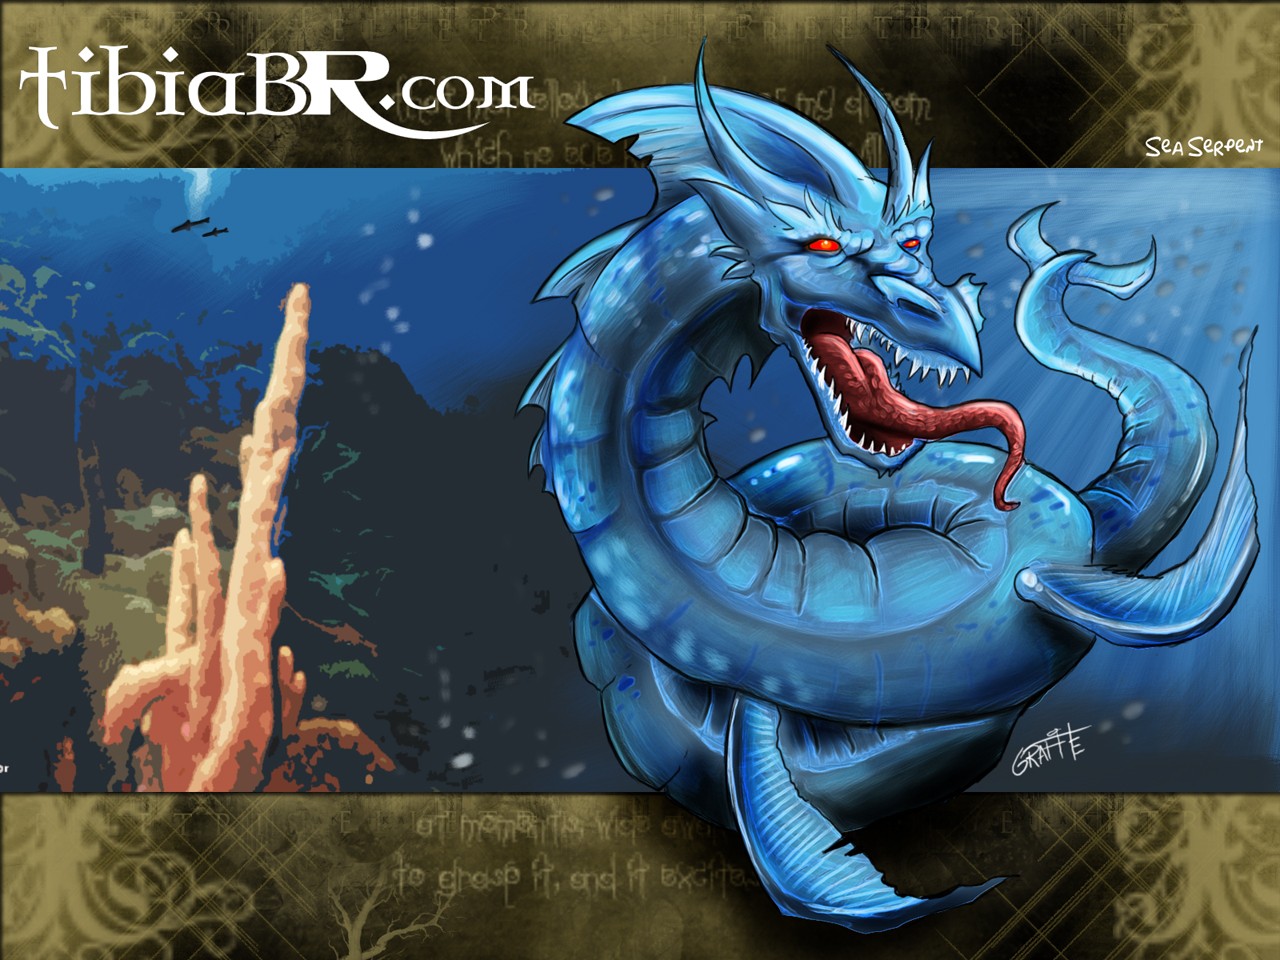 Tibia, PC gaming, RPG, Dragon Wallpaper